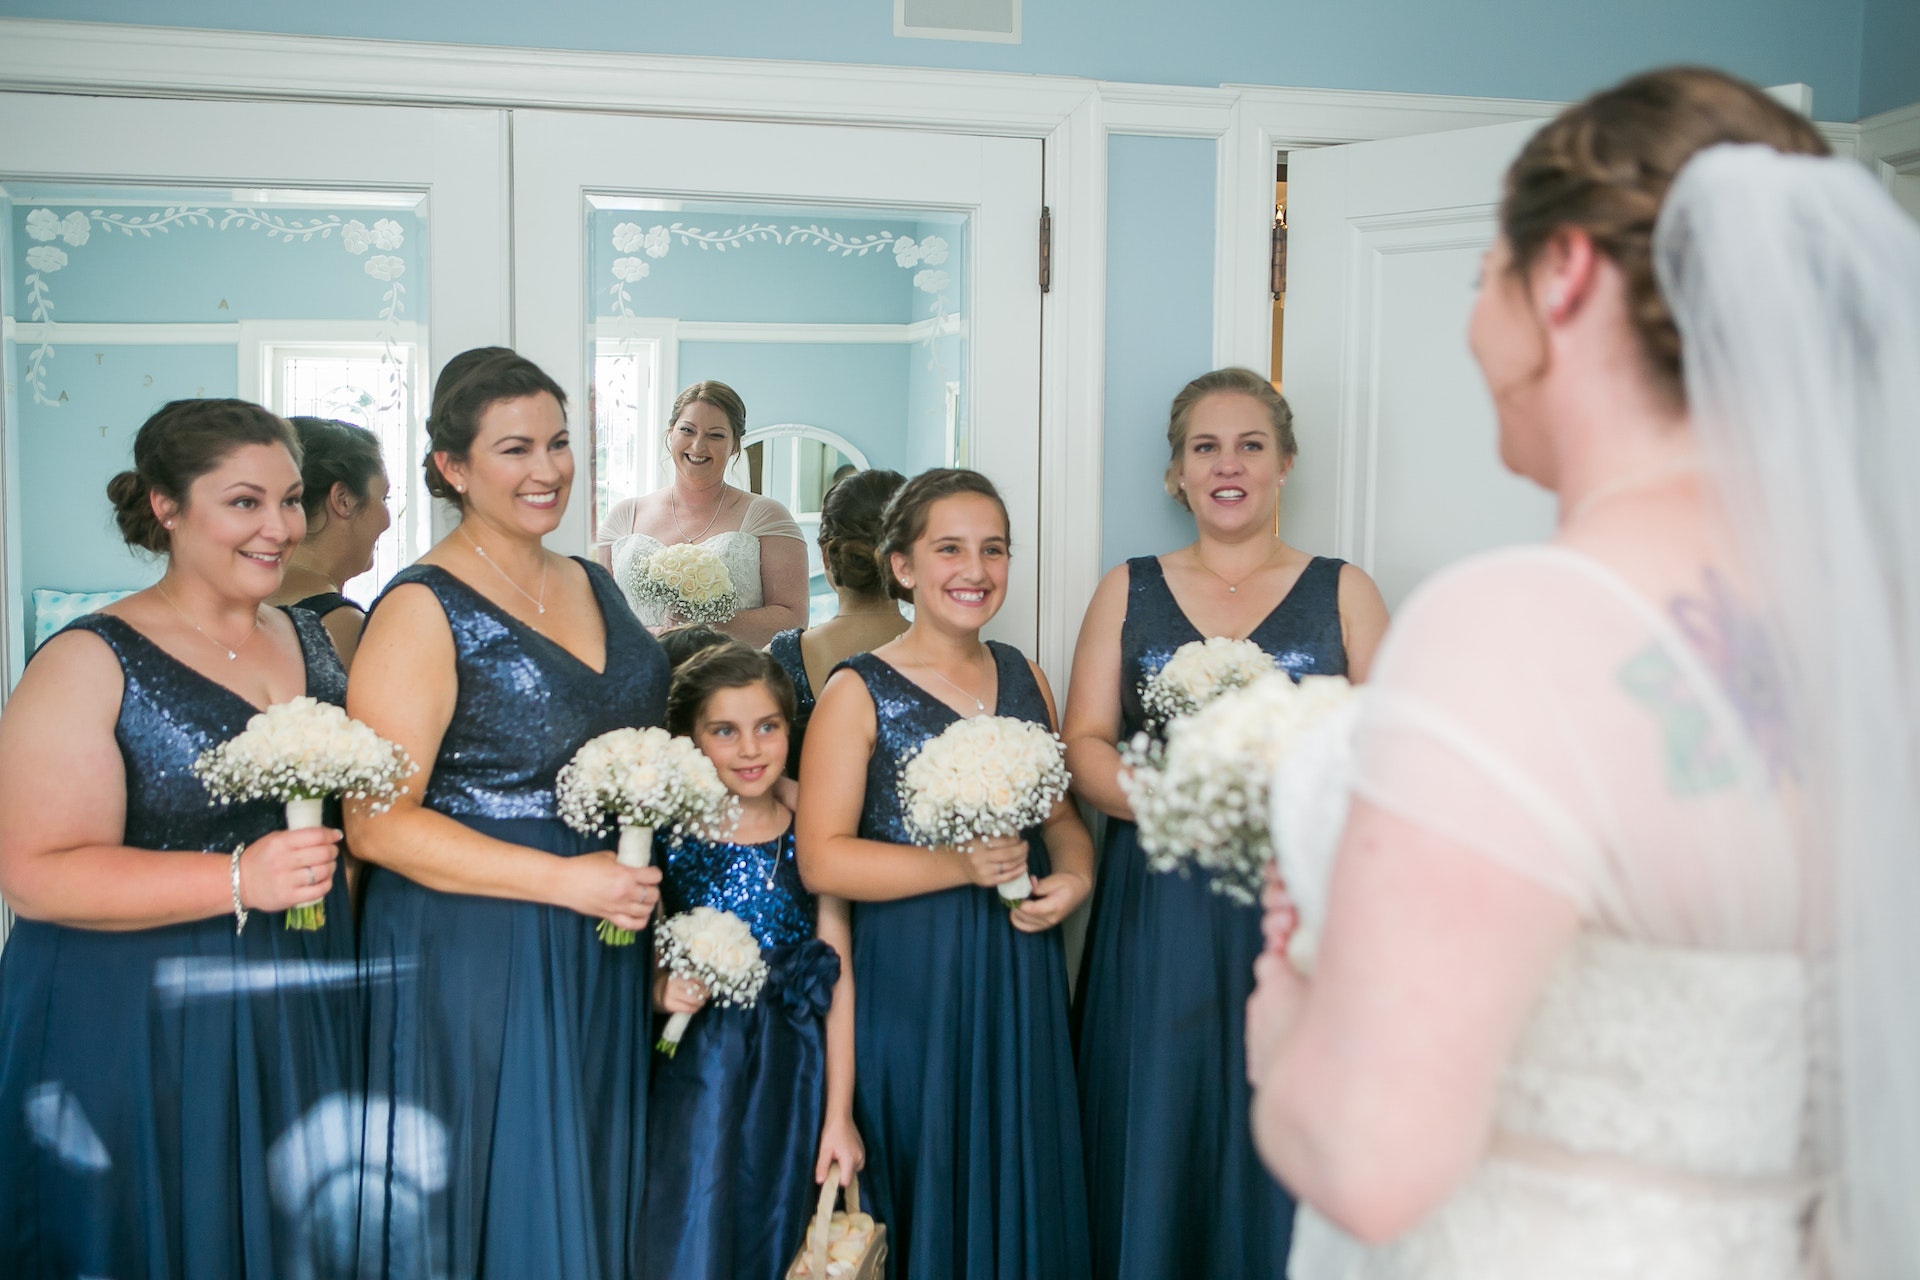 Une jeune demoiselle d'honneur debout avec d'autres demoiselles d'honneur devant la mariée | Source : Pexels